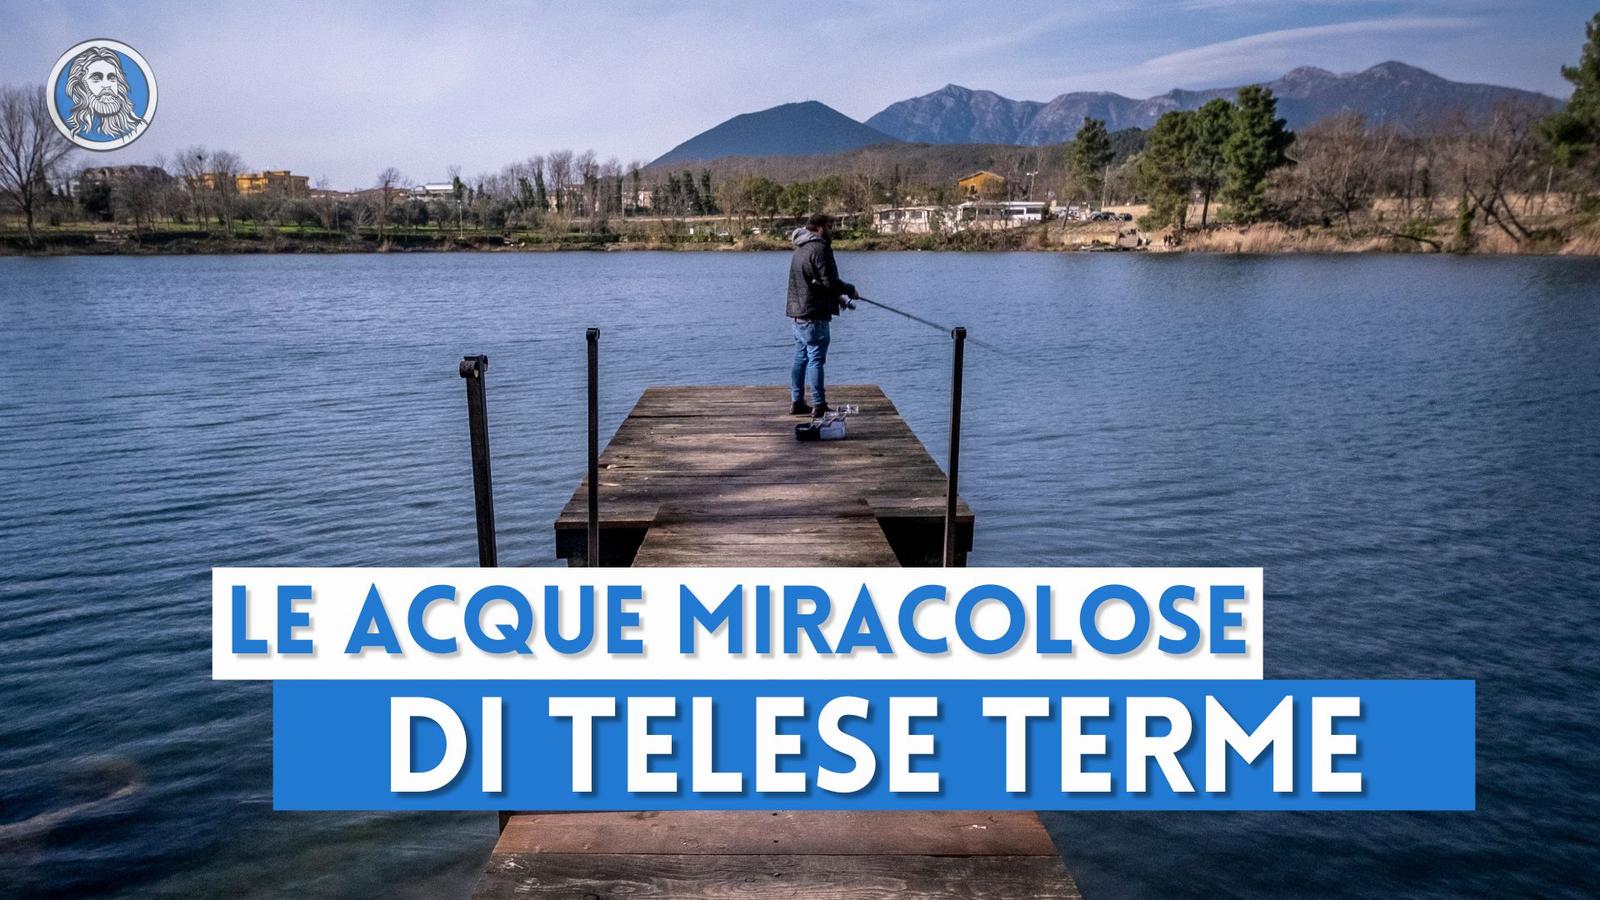 Il Lago di Telese Terme, il gioiello nato da un terremoto